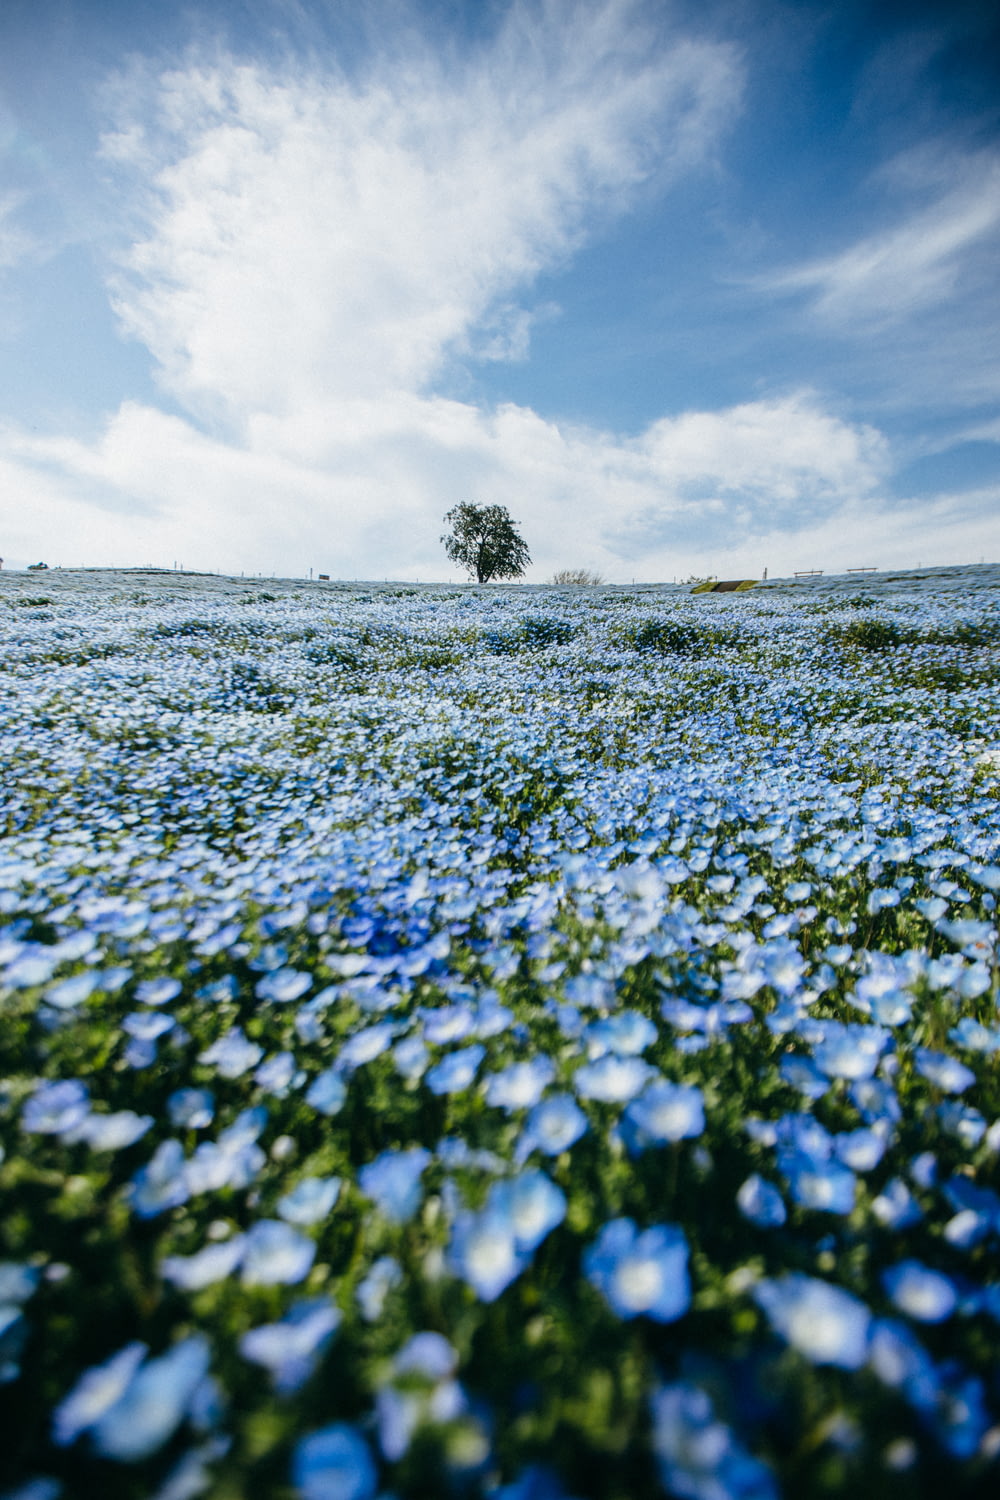 blue flower field under white clouds during daytime